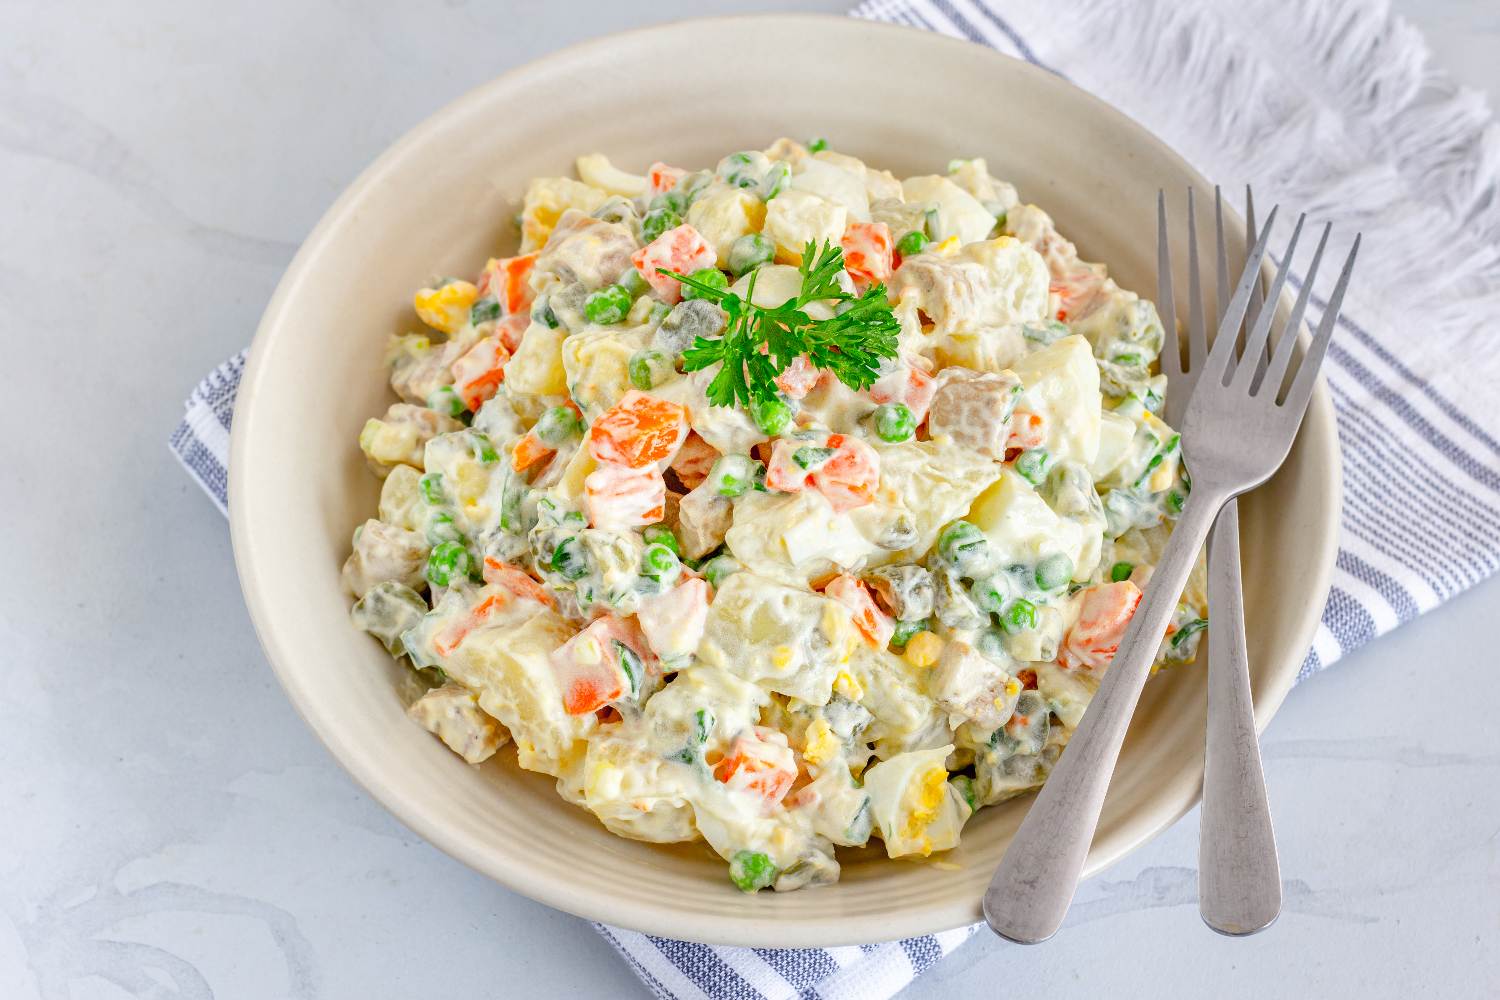 Spýtali sme sa starých mám: Aký je váš osvedčený recept na zemiakový šalát?